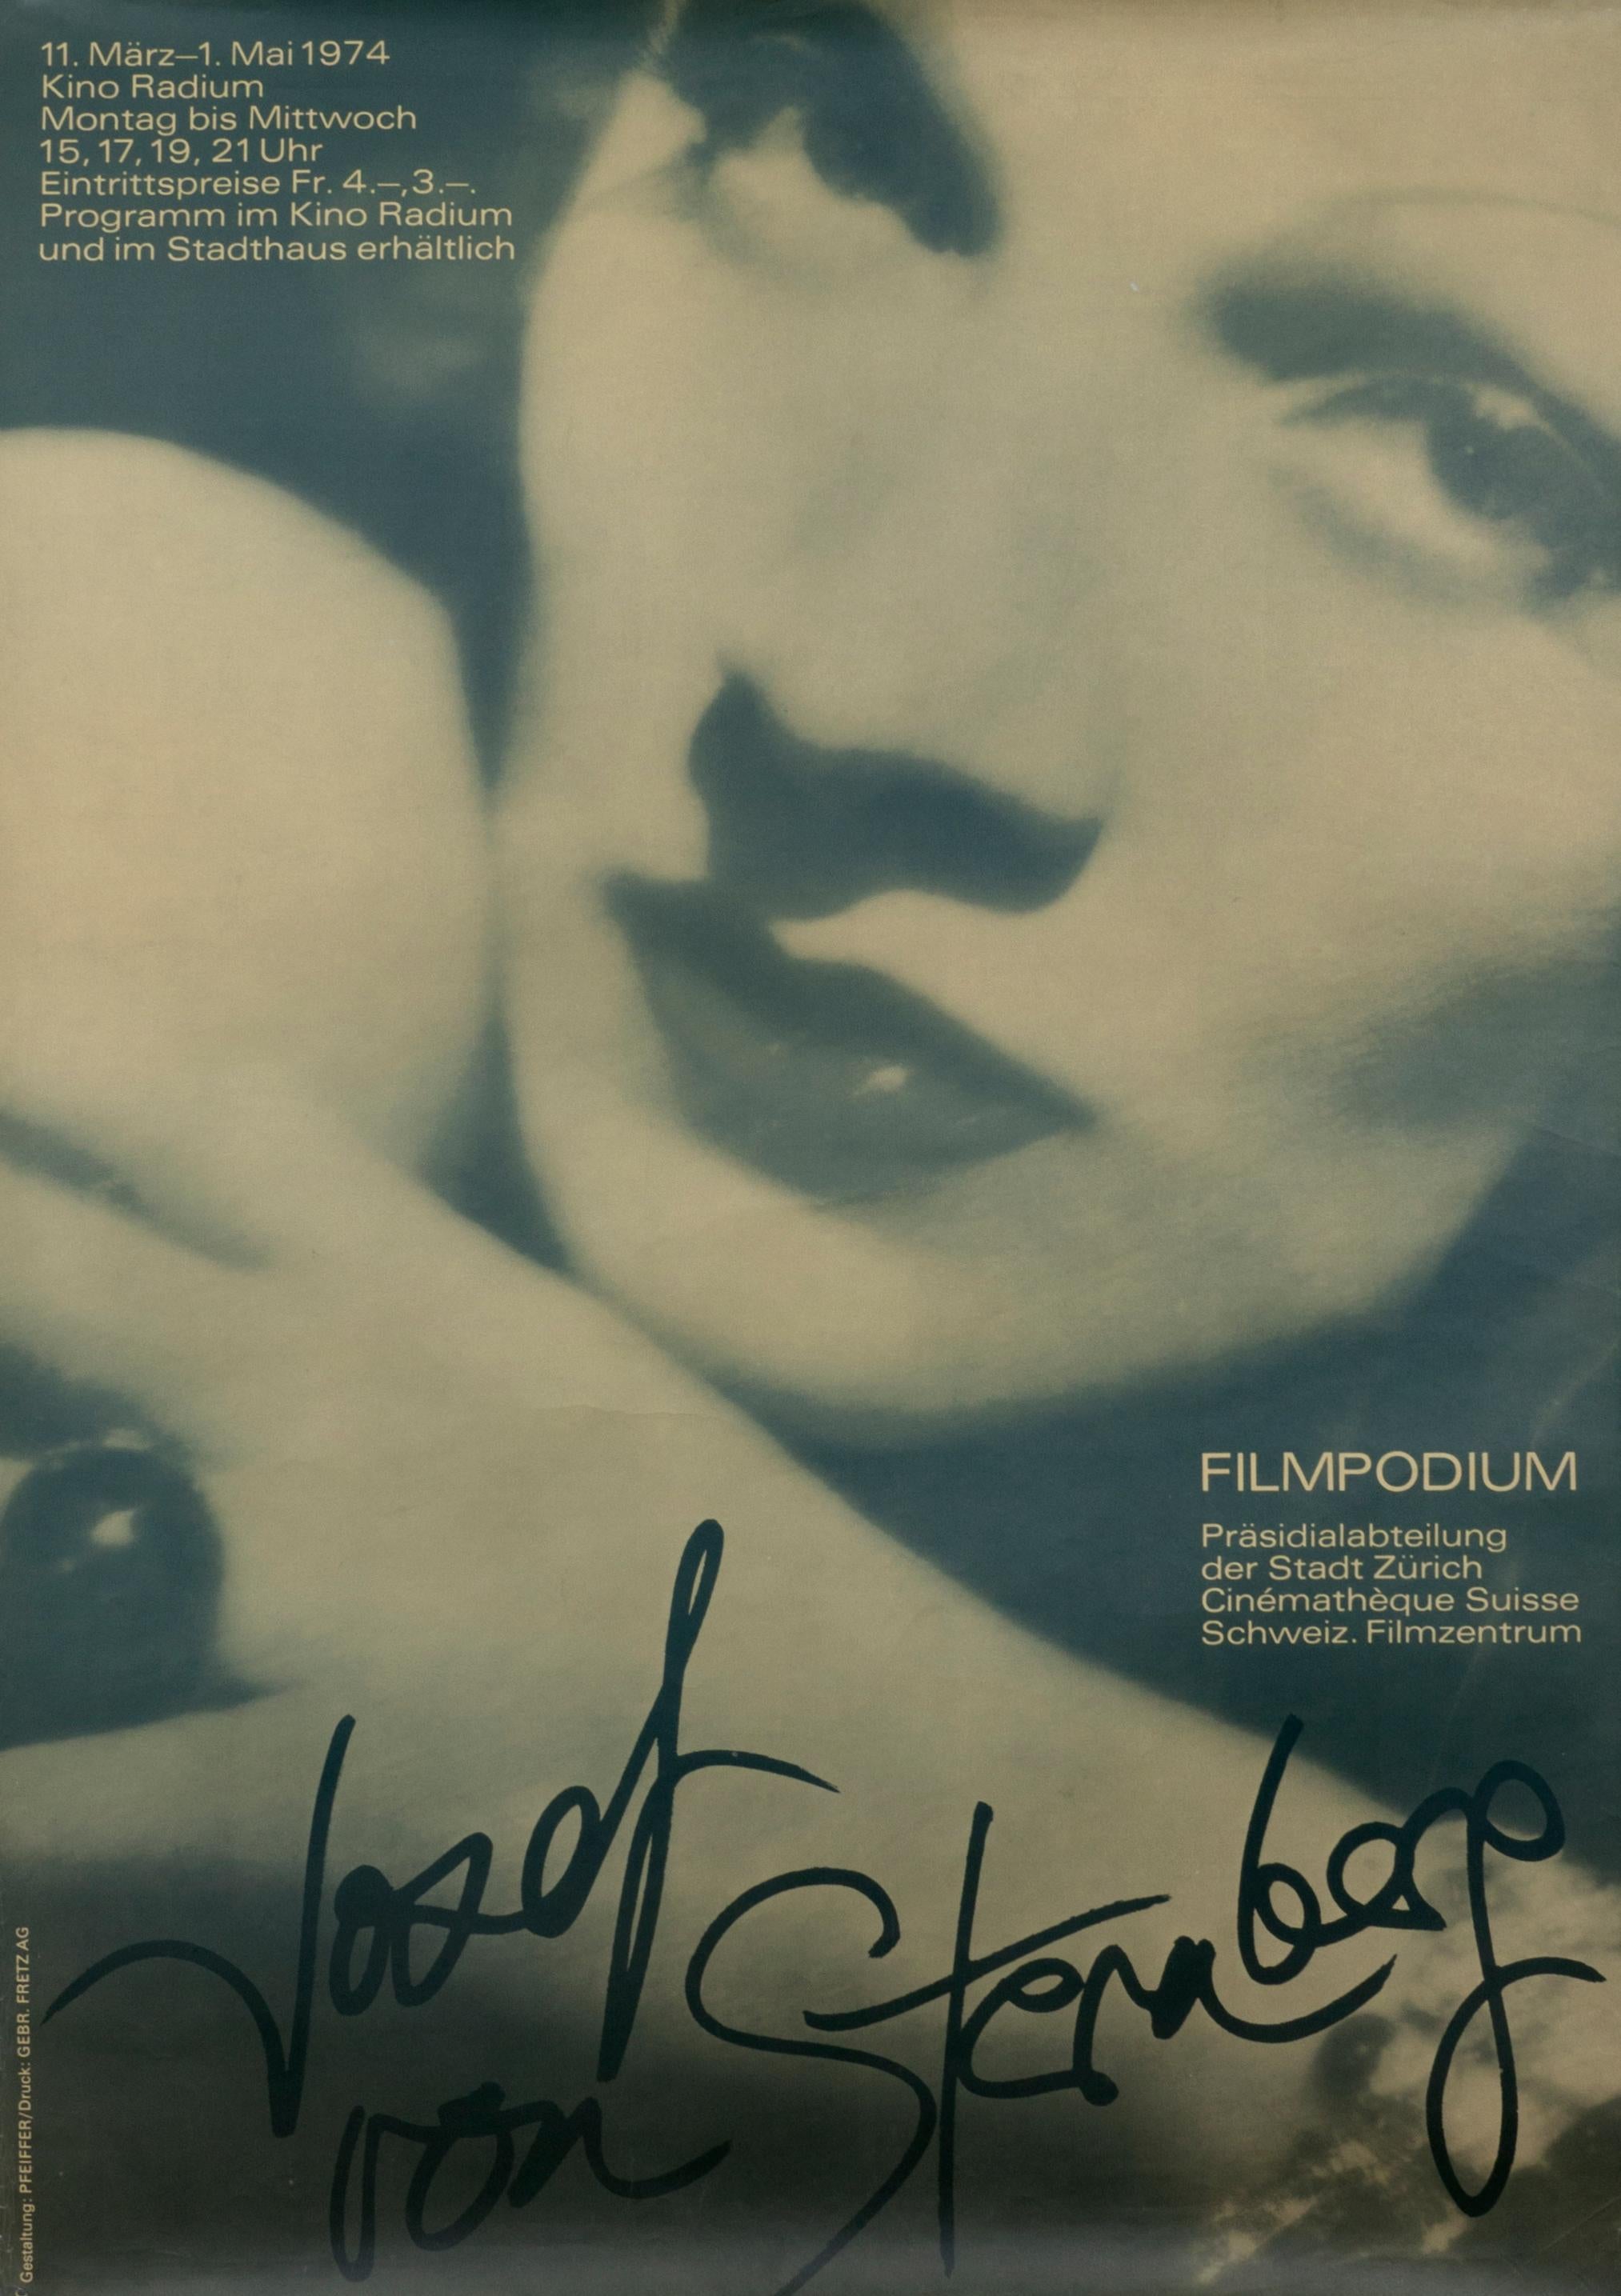 "Josef von Sternberg - Filmpodium" Original Vintage Film Festival Poster - Print by Walter Pfeiffer